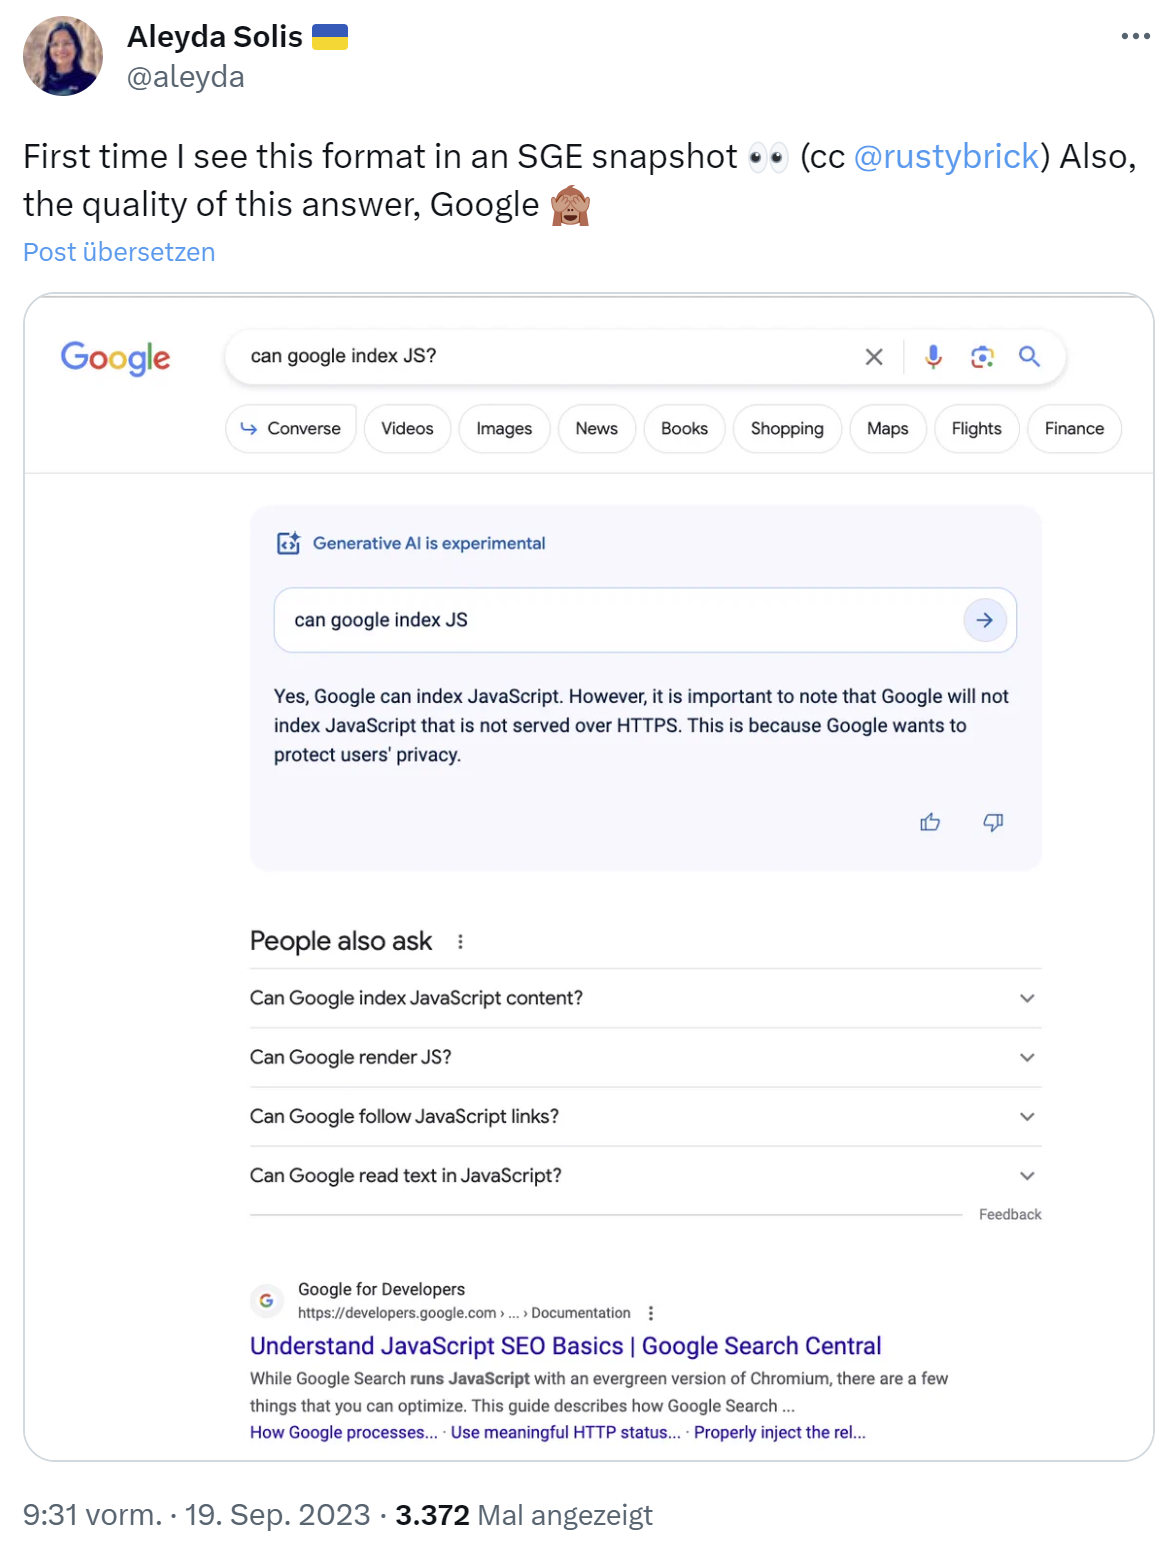 Google testet neues Design für neue Suche 'SGE', das an die bestehende Suche erinnert - Aleyda Solis auf Twitter